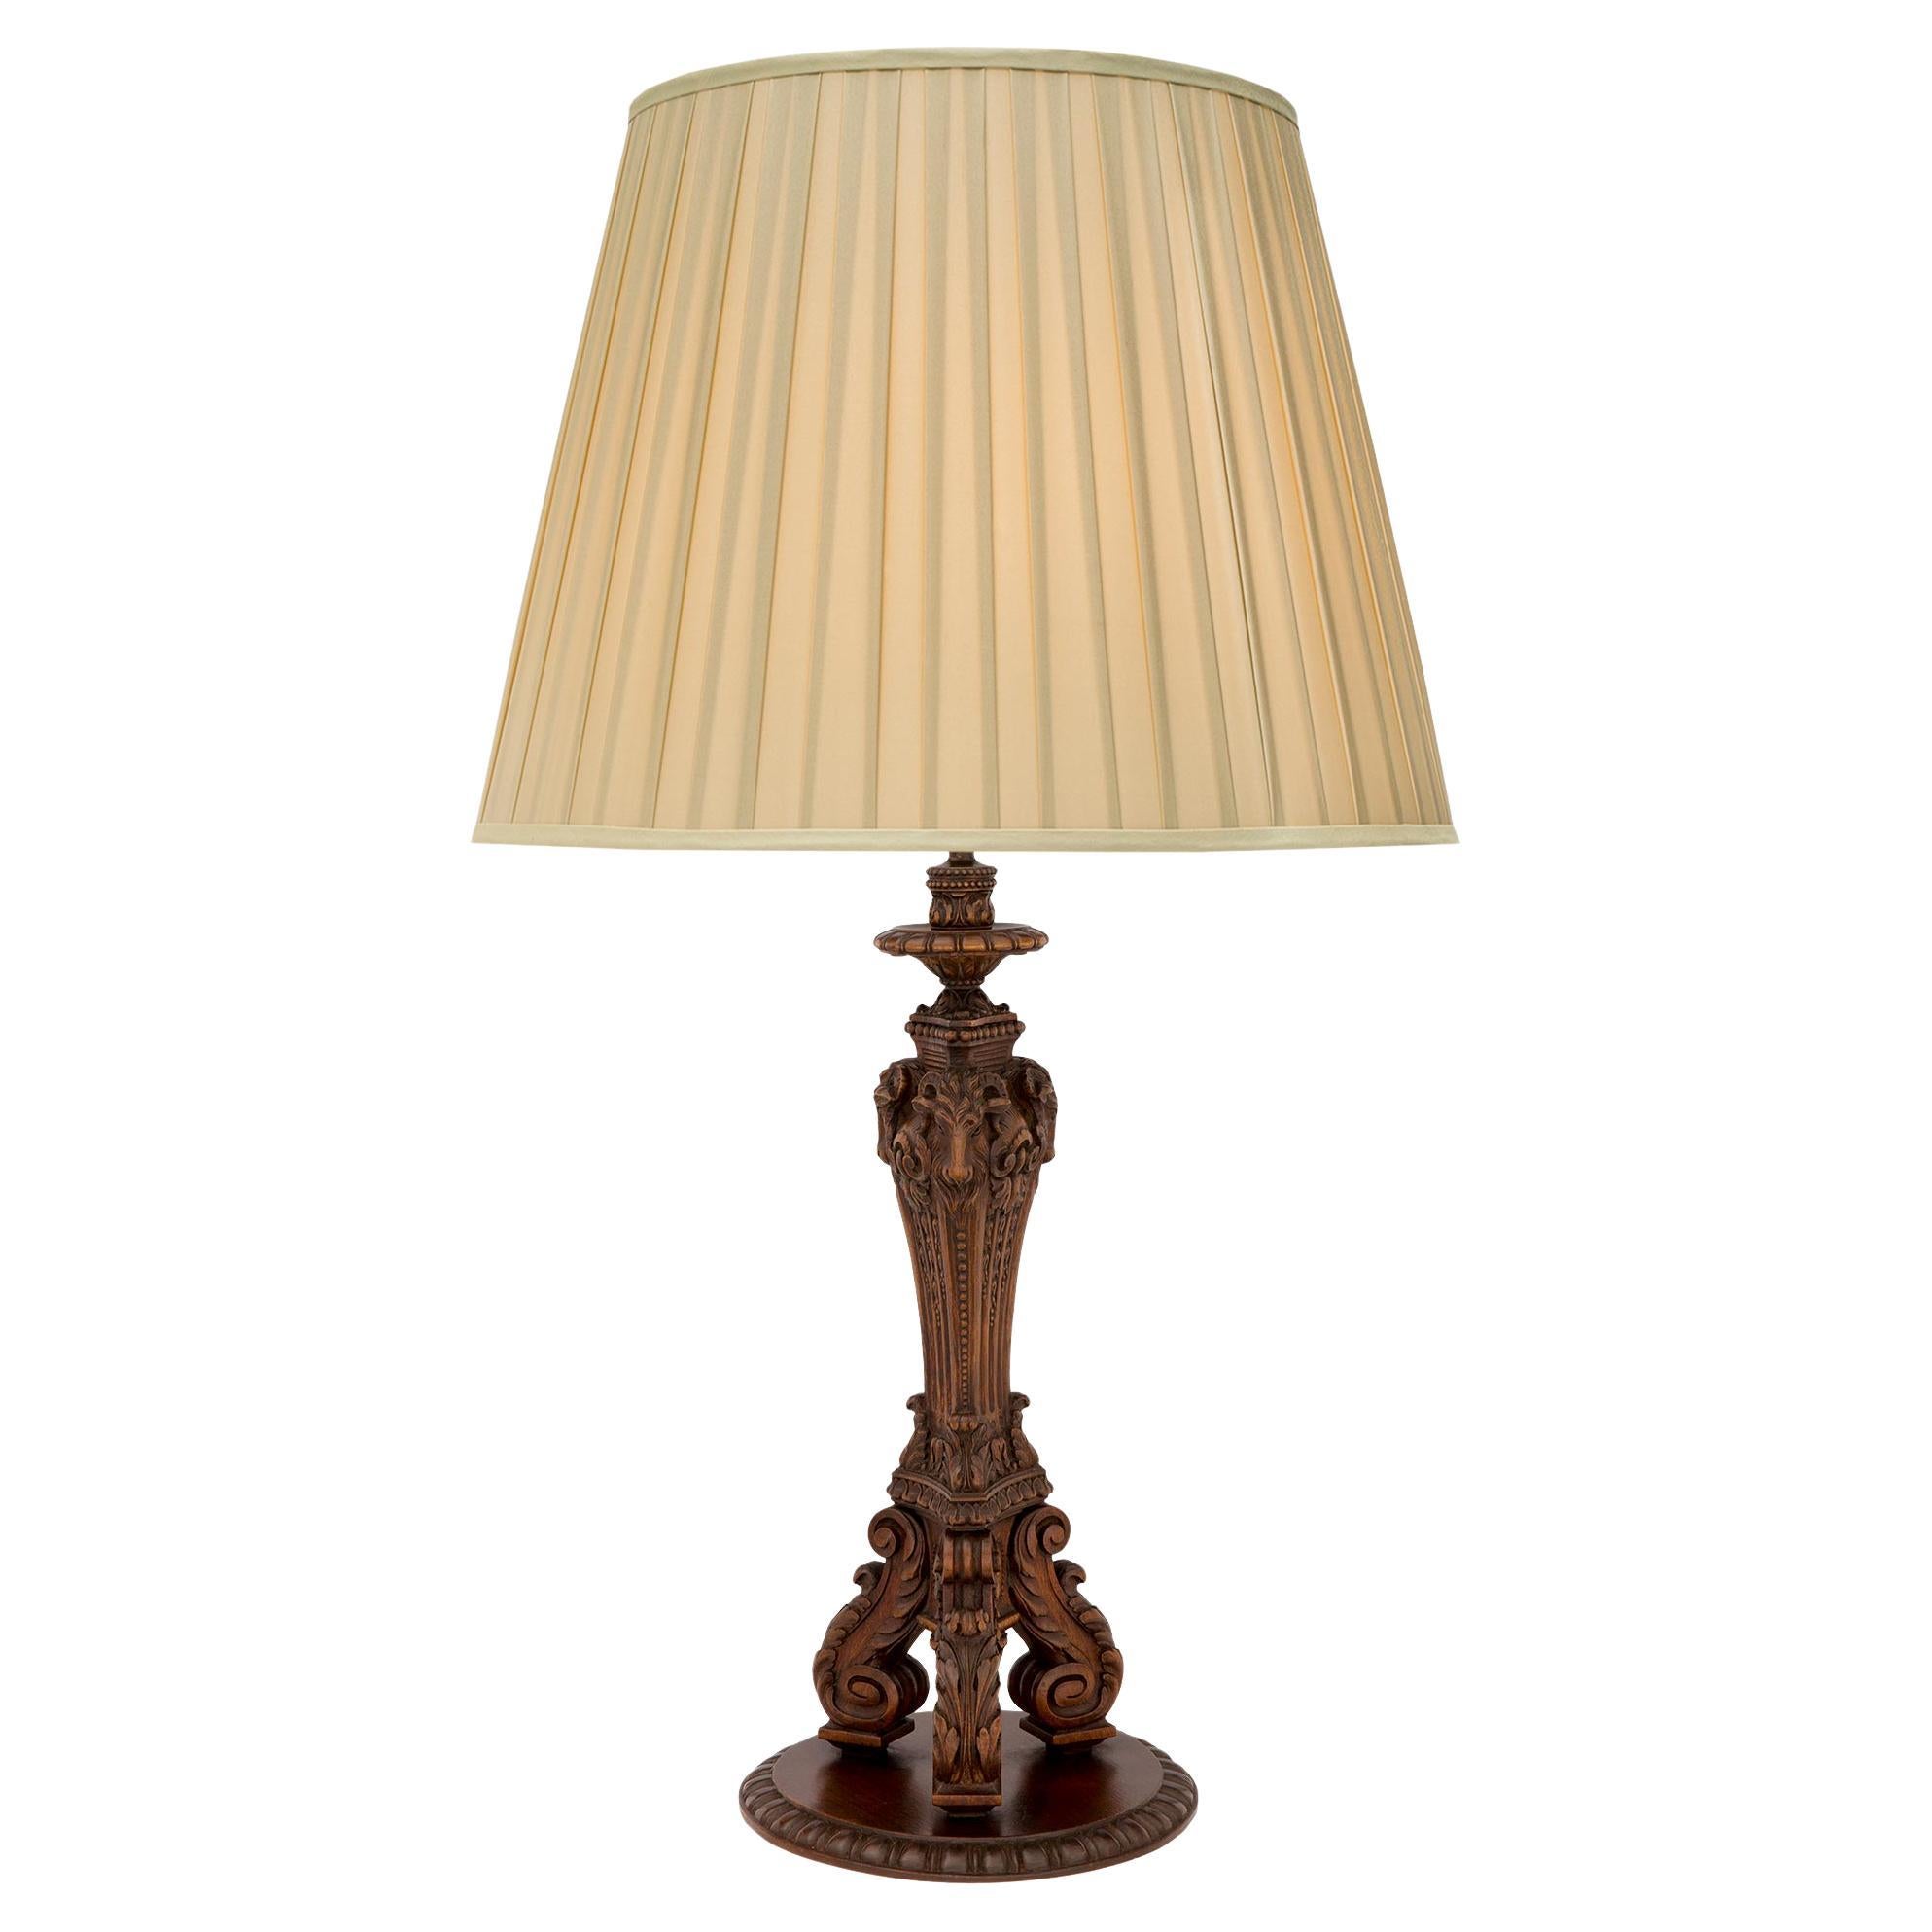 Lampe française en chêne de style Louis XVI du XIXe siècle